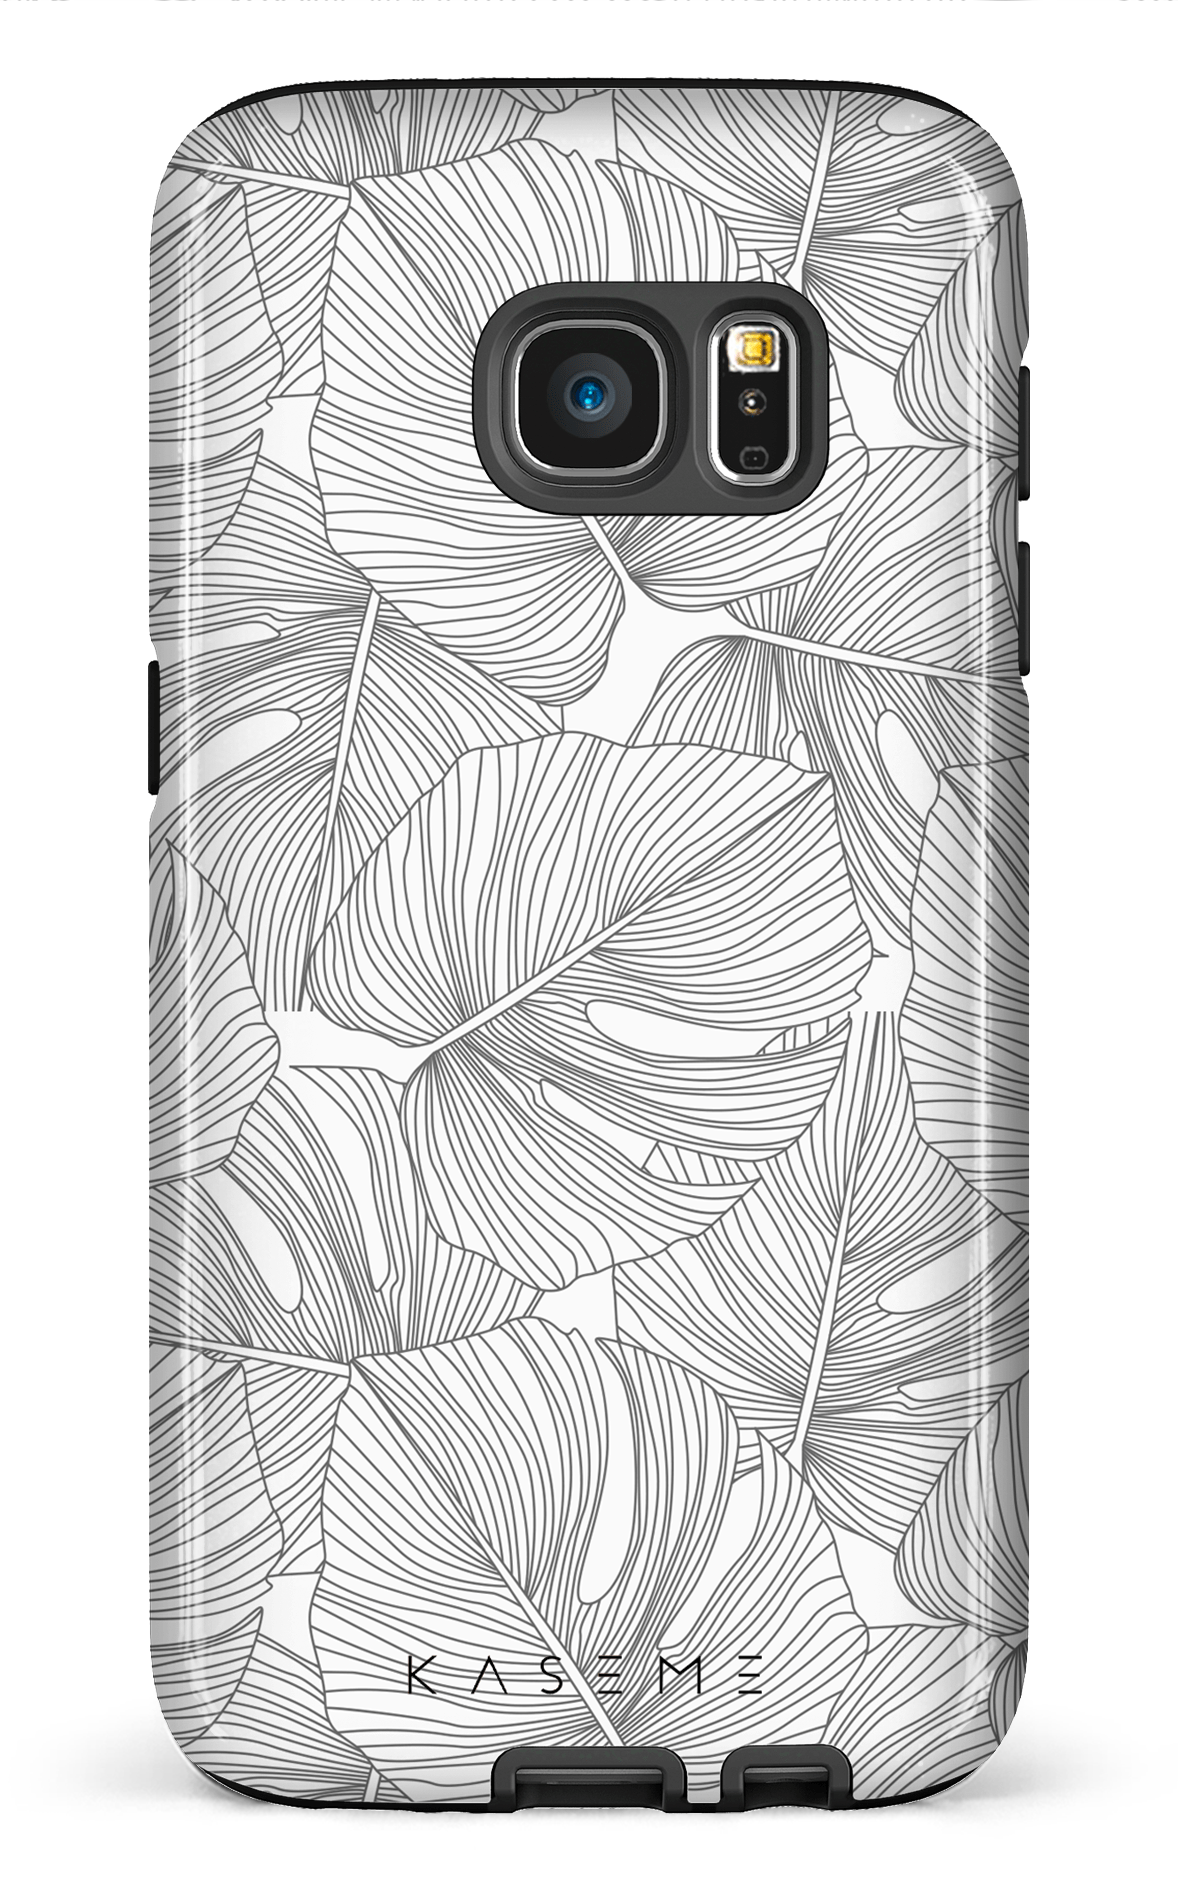 Deliciosa - Galaxy S7